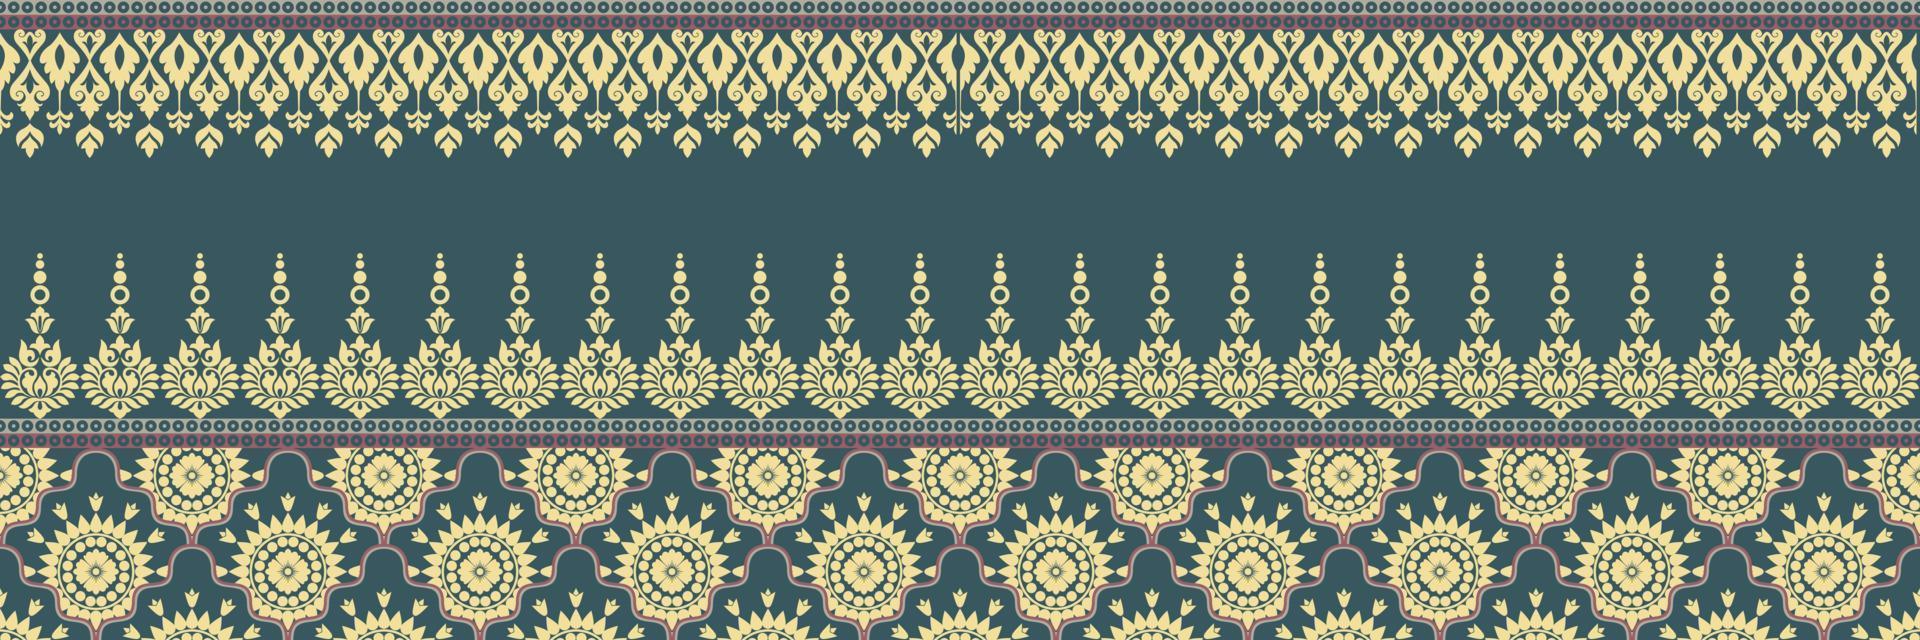 etnisch patroon. hoofddoek patroon. zijde nek sjaal. bandana afdrukken. hoofddoek. bloemen wijnoogst stijl. Indonesisch batik. textiel, kleding stof, tegel, kleding. tribal textuur. vector. blauw, rood, goud, geel. vector